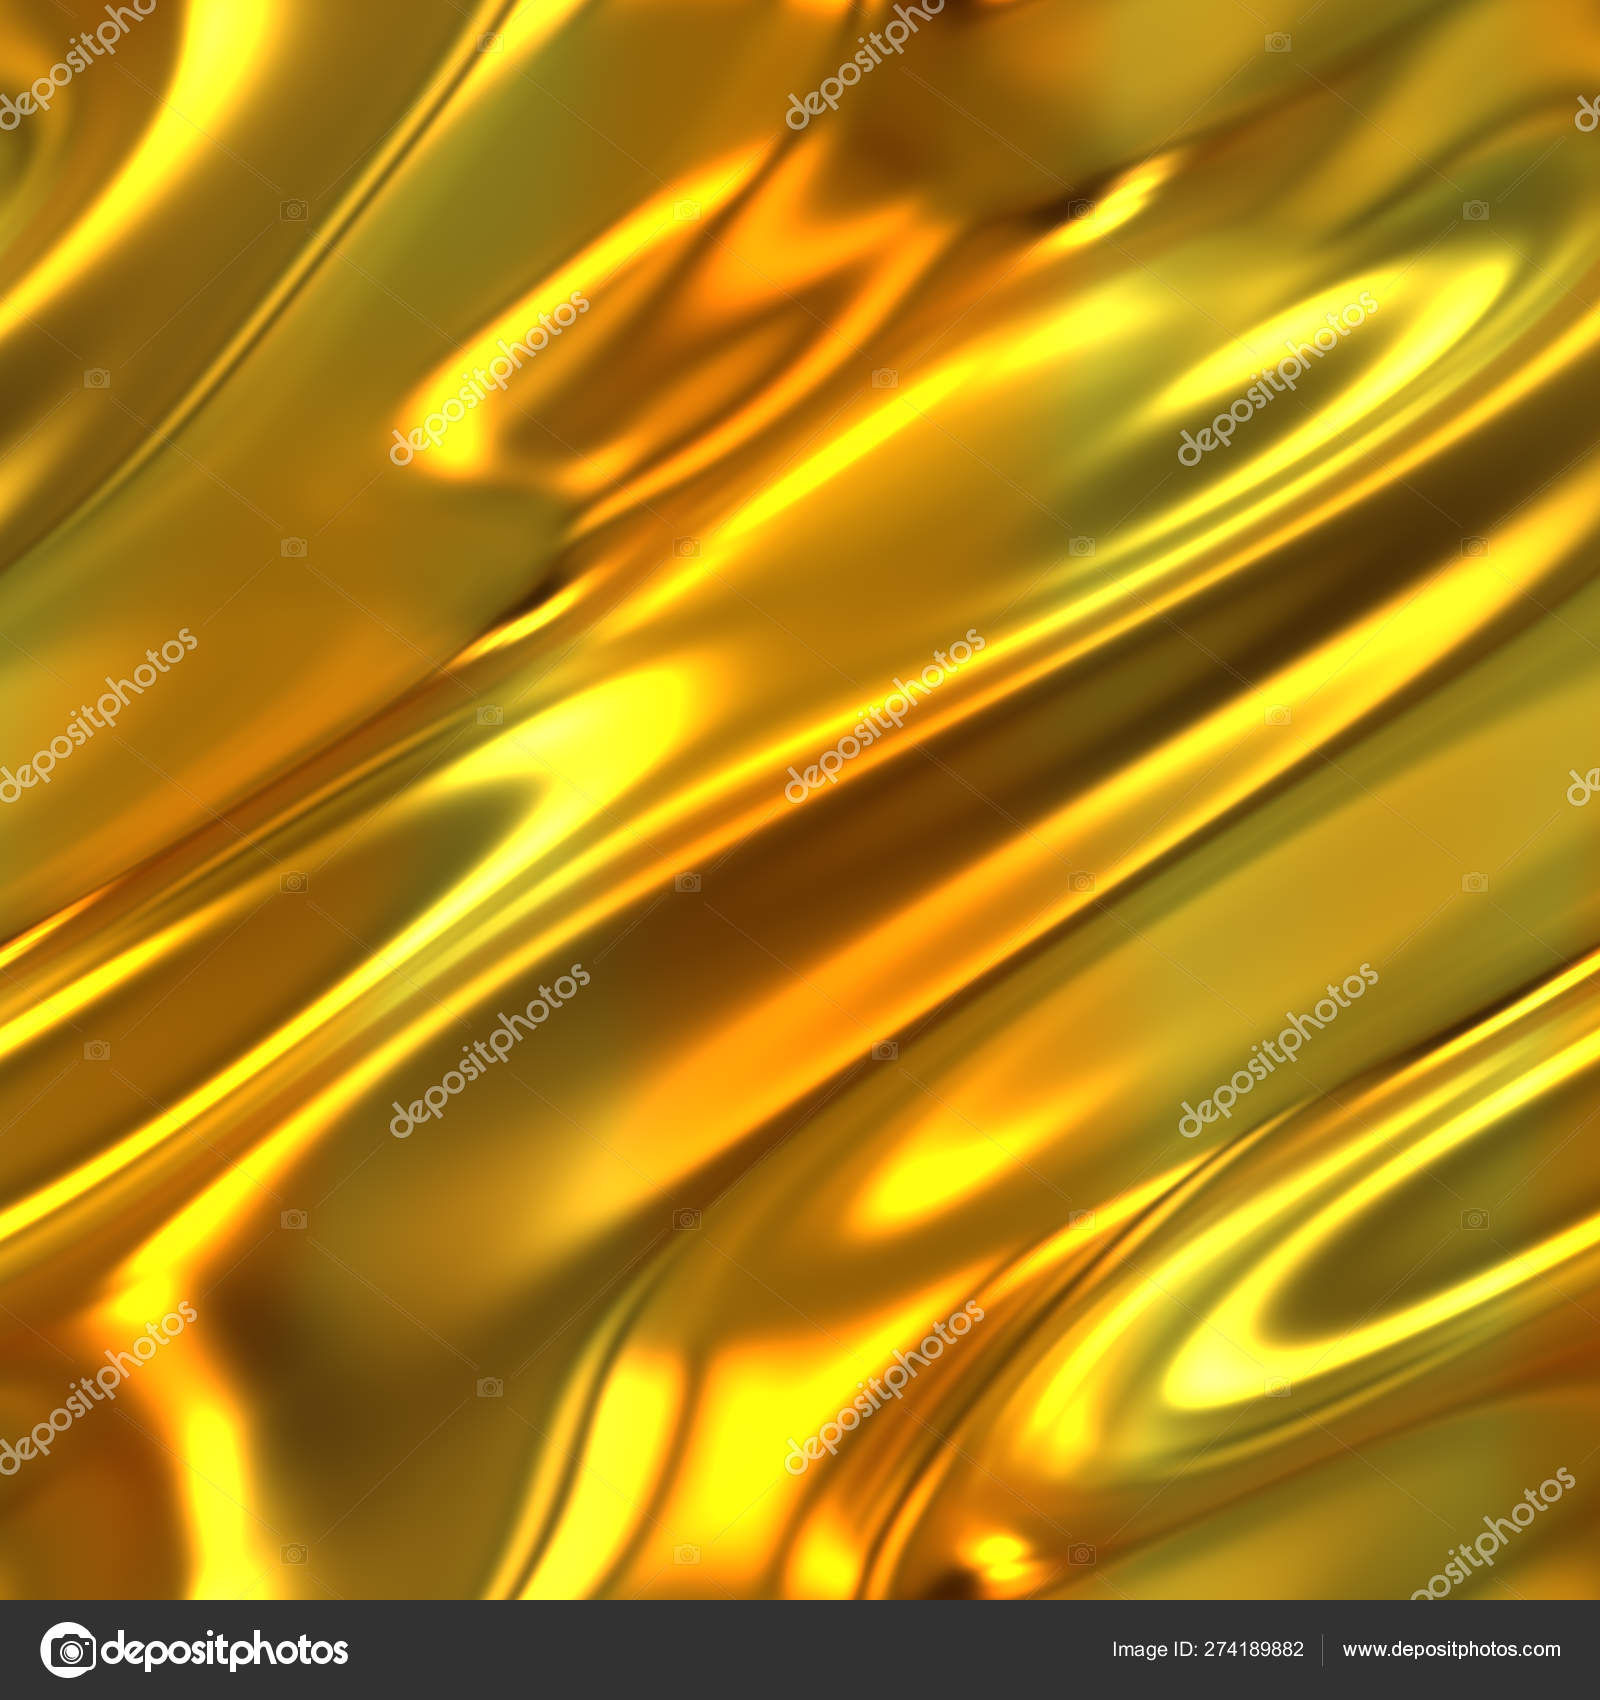 Vân vàng trên chất liệu vải đang là trào lưu thịnh hành hiện nay. Bức ảnh này sẽ giúp bạn nhìn thấy sức cuốn hút và huyền bí của vân vàng trên chất liệu vải. 